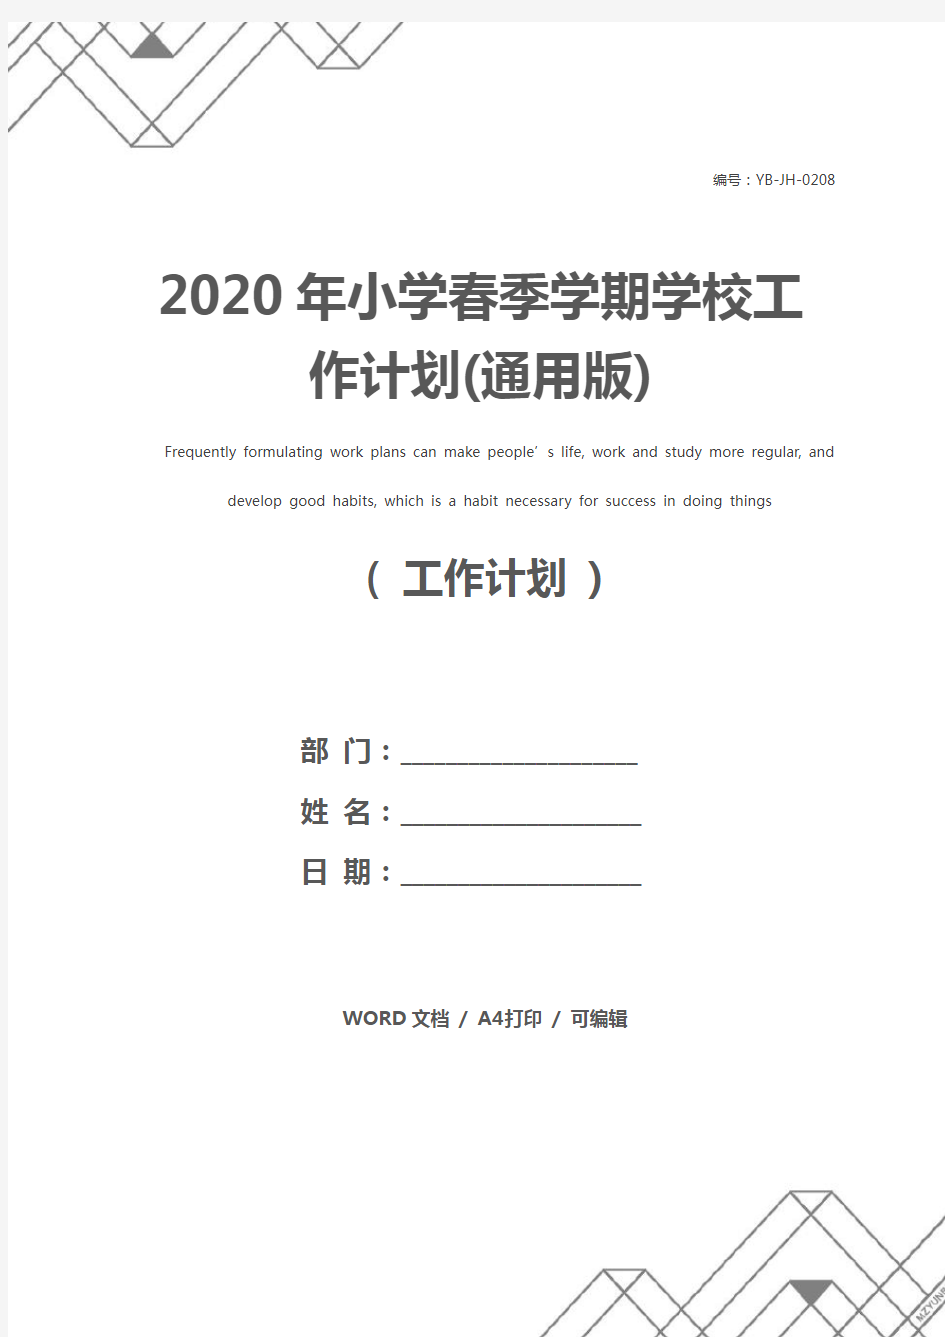 2020年小学春季学期学校工作计划(通用版)